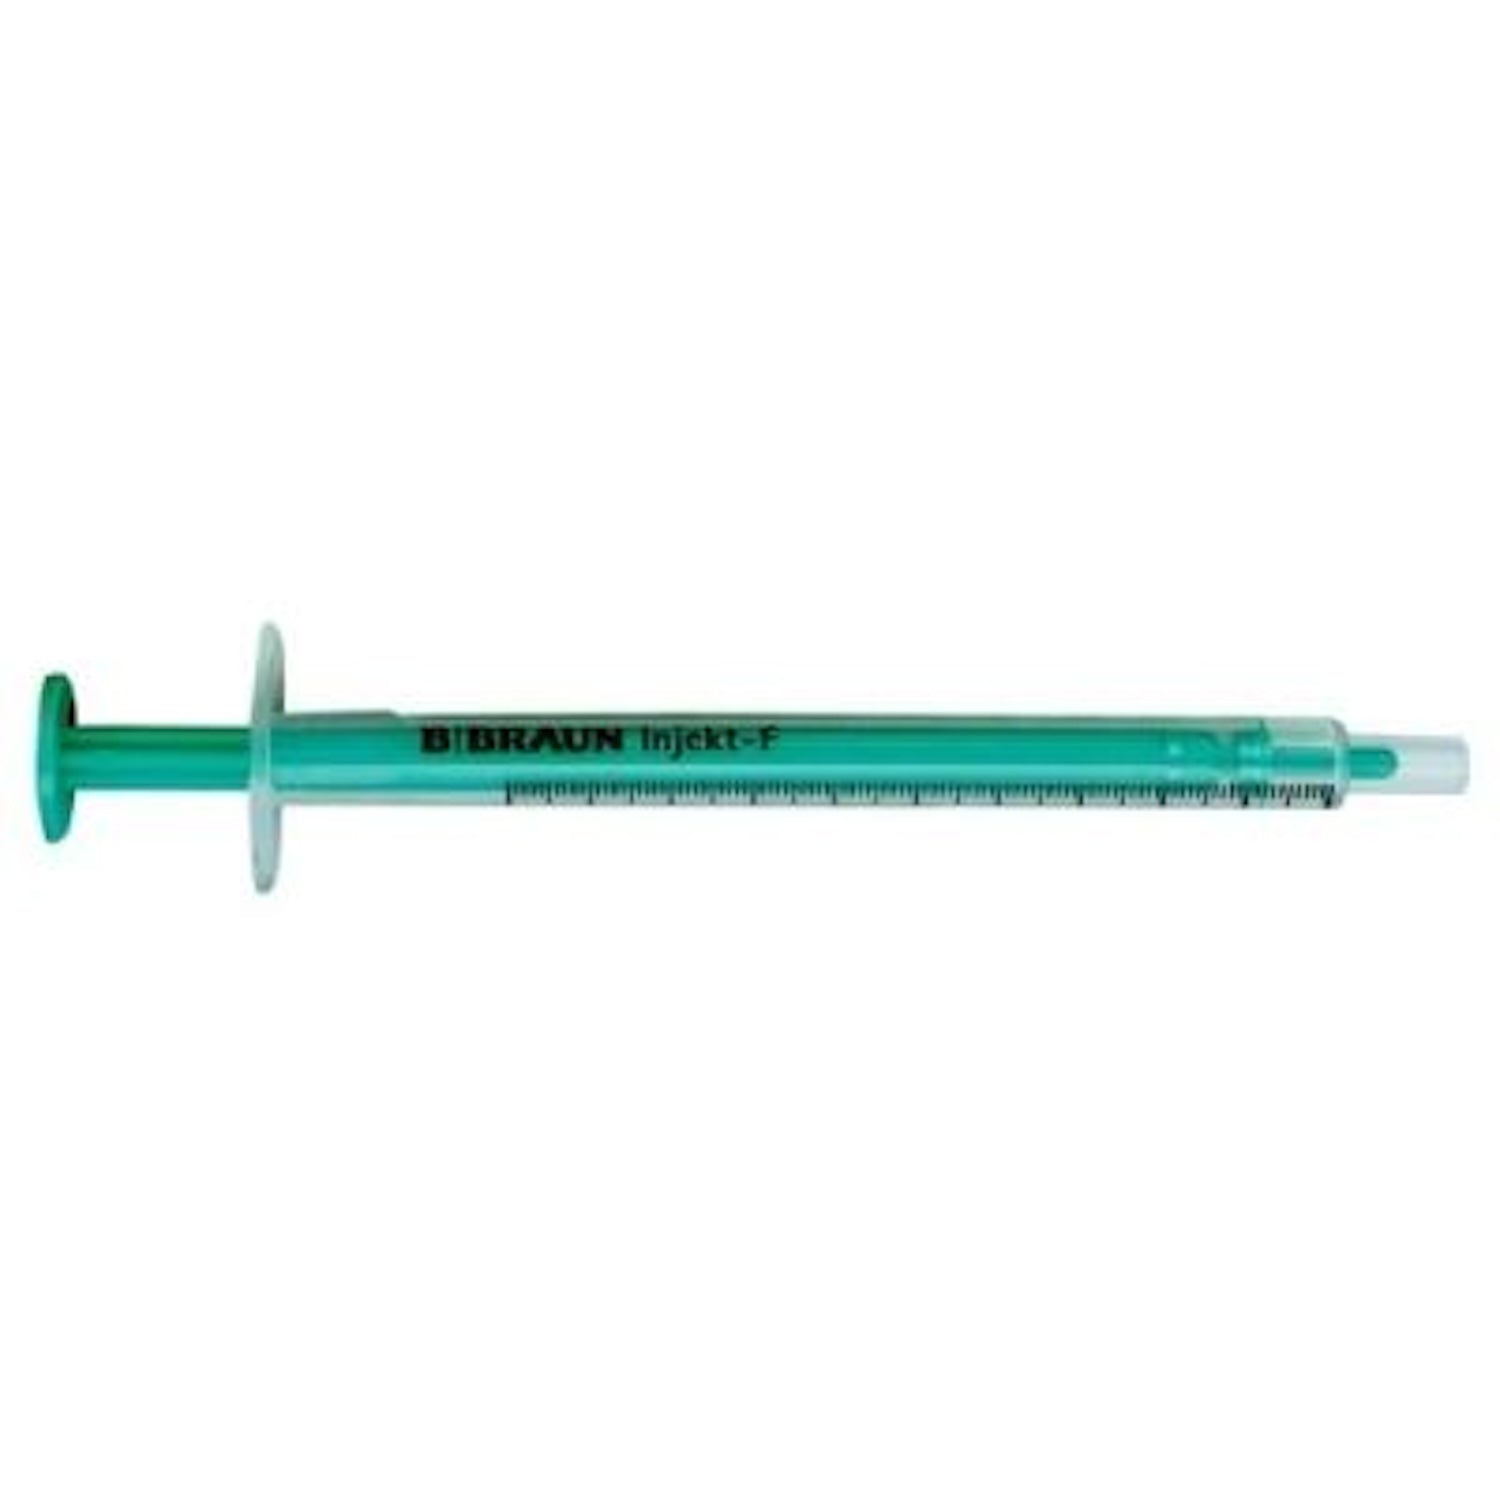 Braun Injekt 2 Piece Fine Dosage Syringe | 1ml | Pack of 100